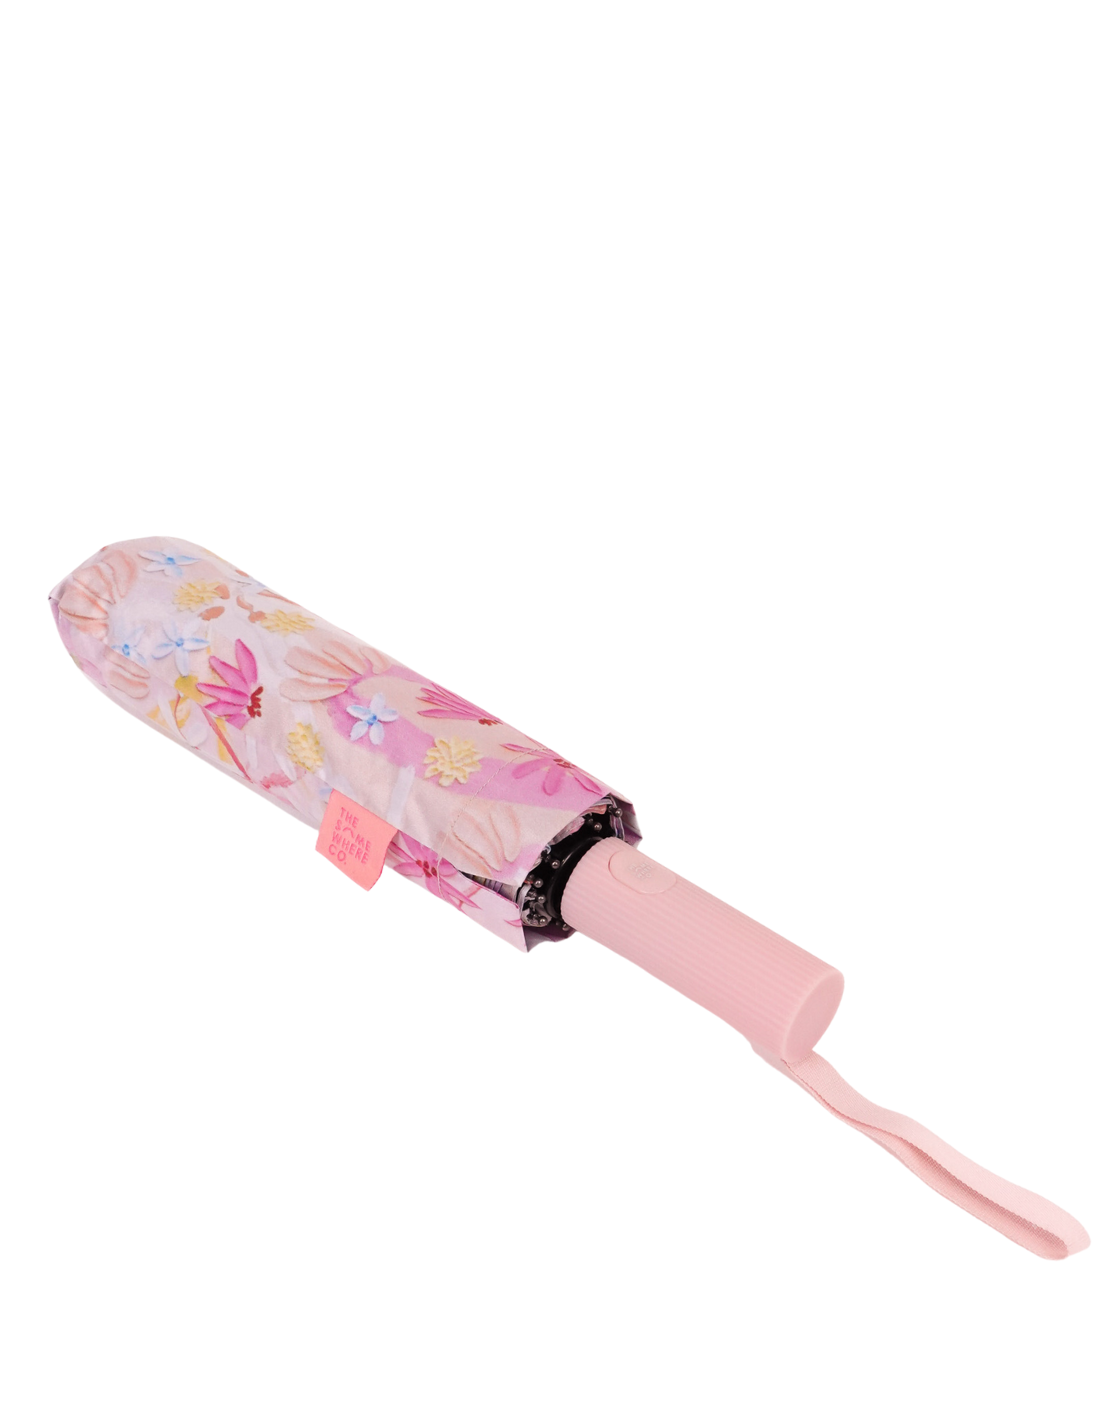 Daisy Chain Umbrella